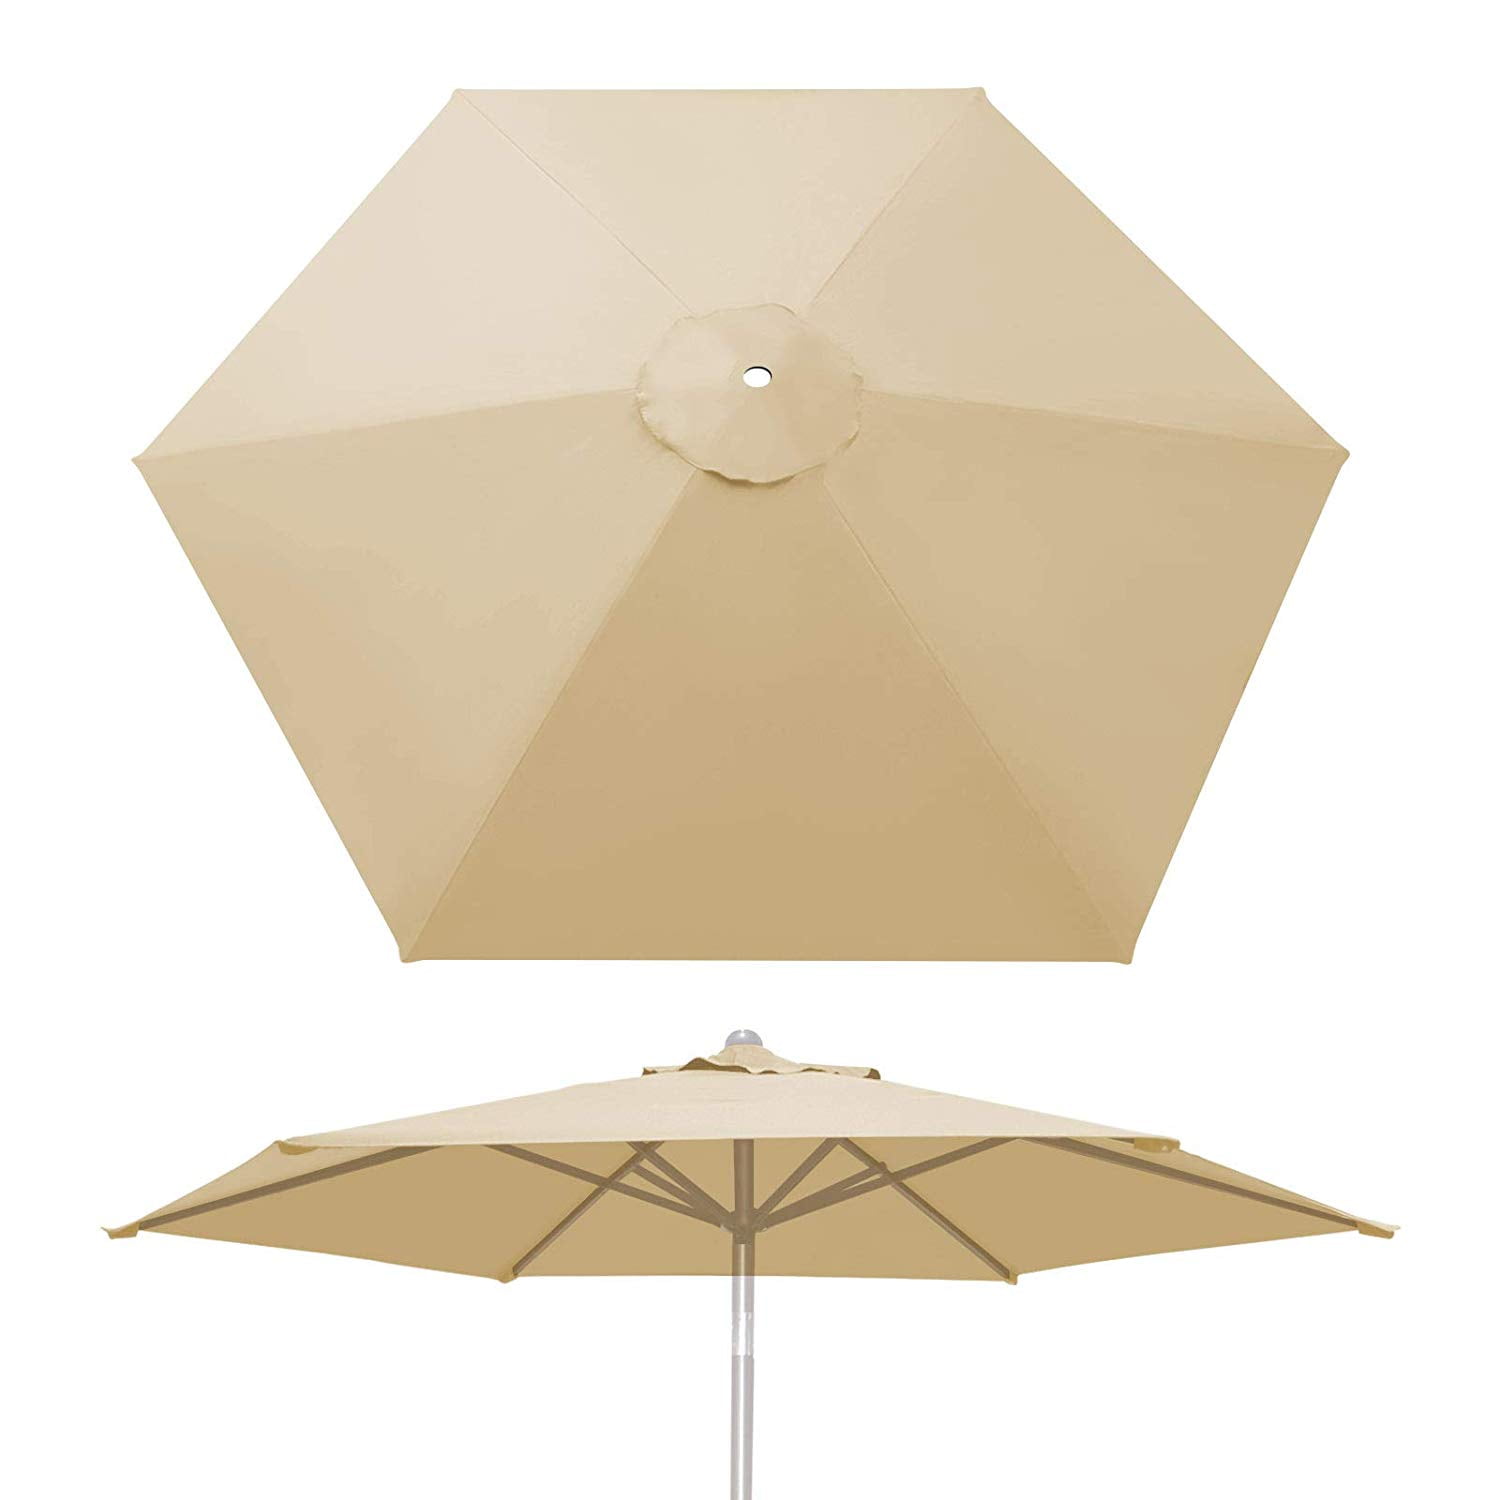 9ft 6 Ribs Patio Garden Umbrella Canopy Replacement Parasol Sunshade Top Cover 